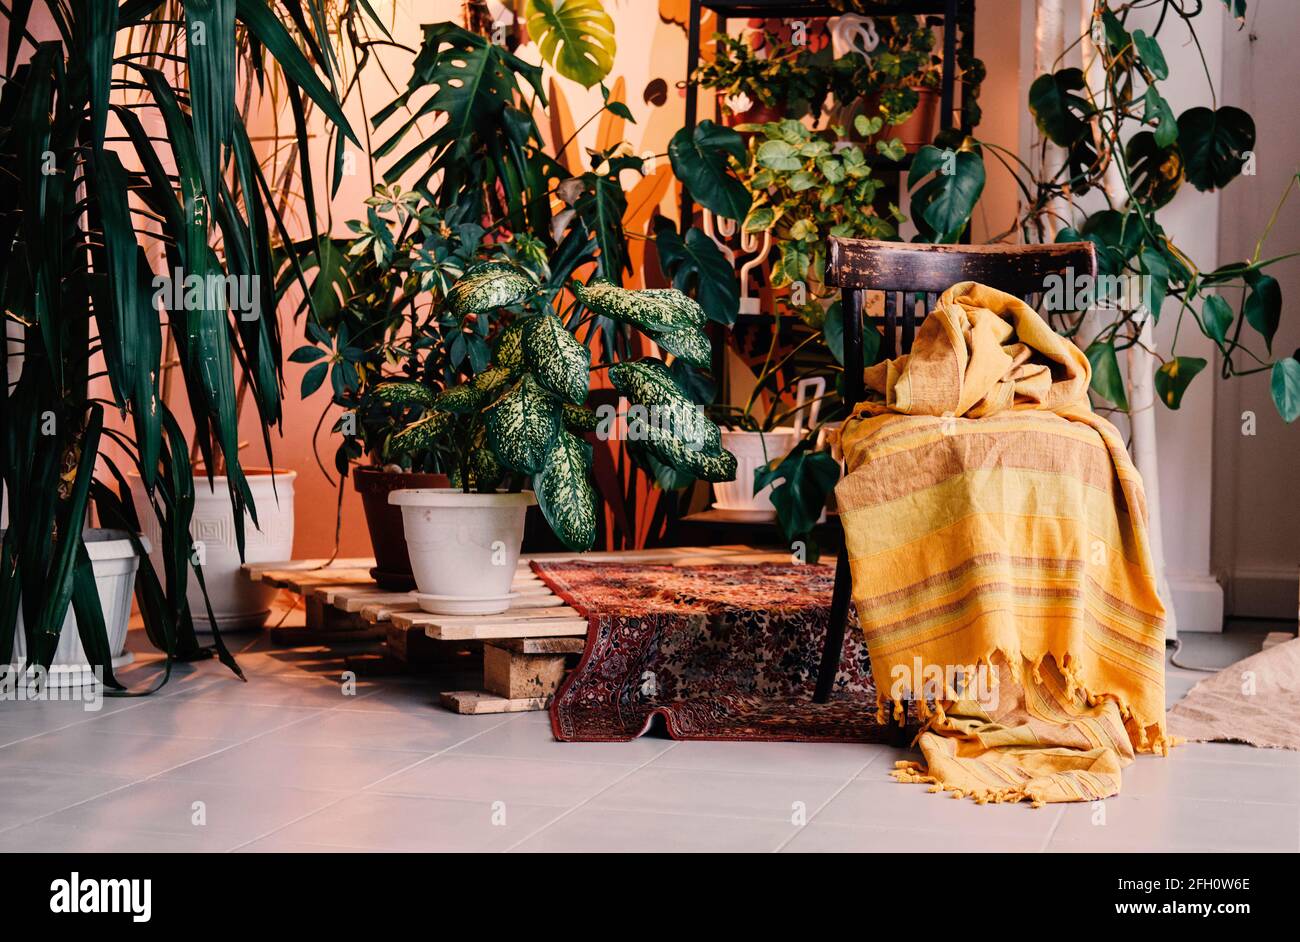 Verschiedene schöne Zimmerpflanzen auf dem Boden im Zimmer. Haus Dekoration. boho chic Interieur. Balinesischer Stil. Stockfoto